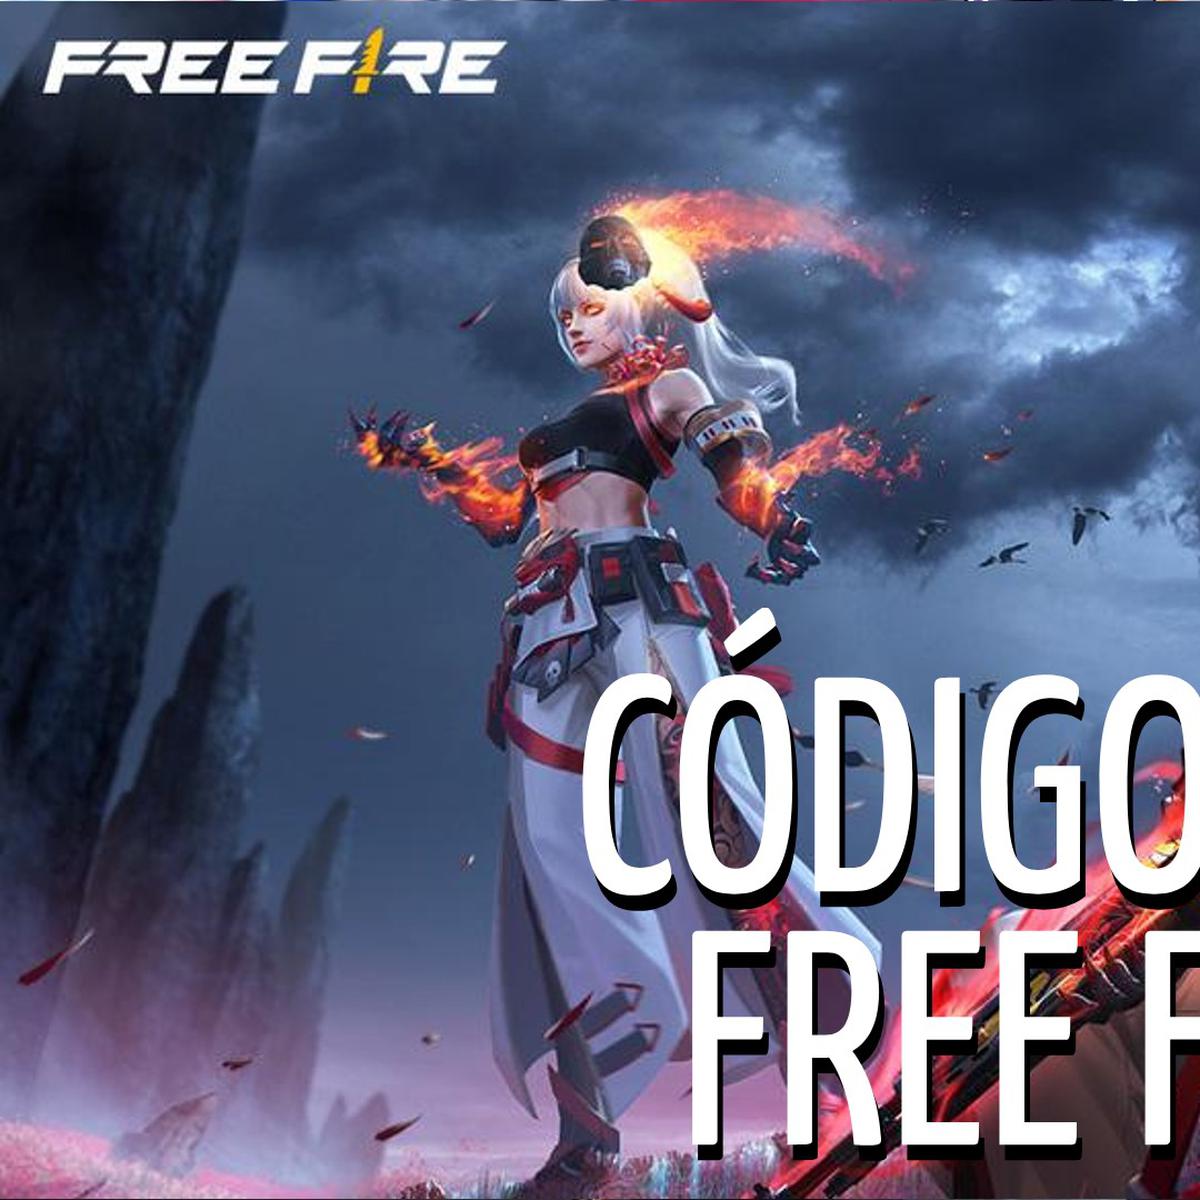 Códigos gratis de Free Fire y recompensas de hoy, miércoles, 26 de octubre  de 2022